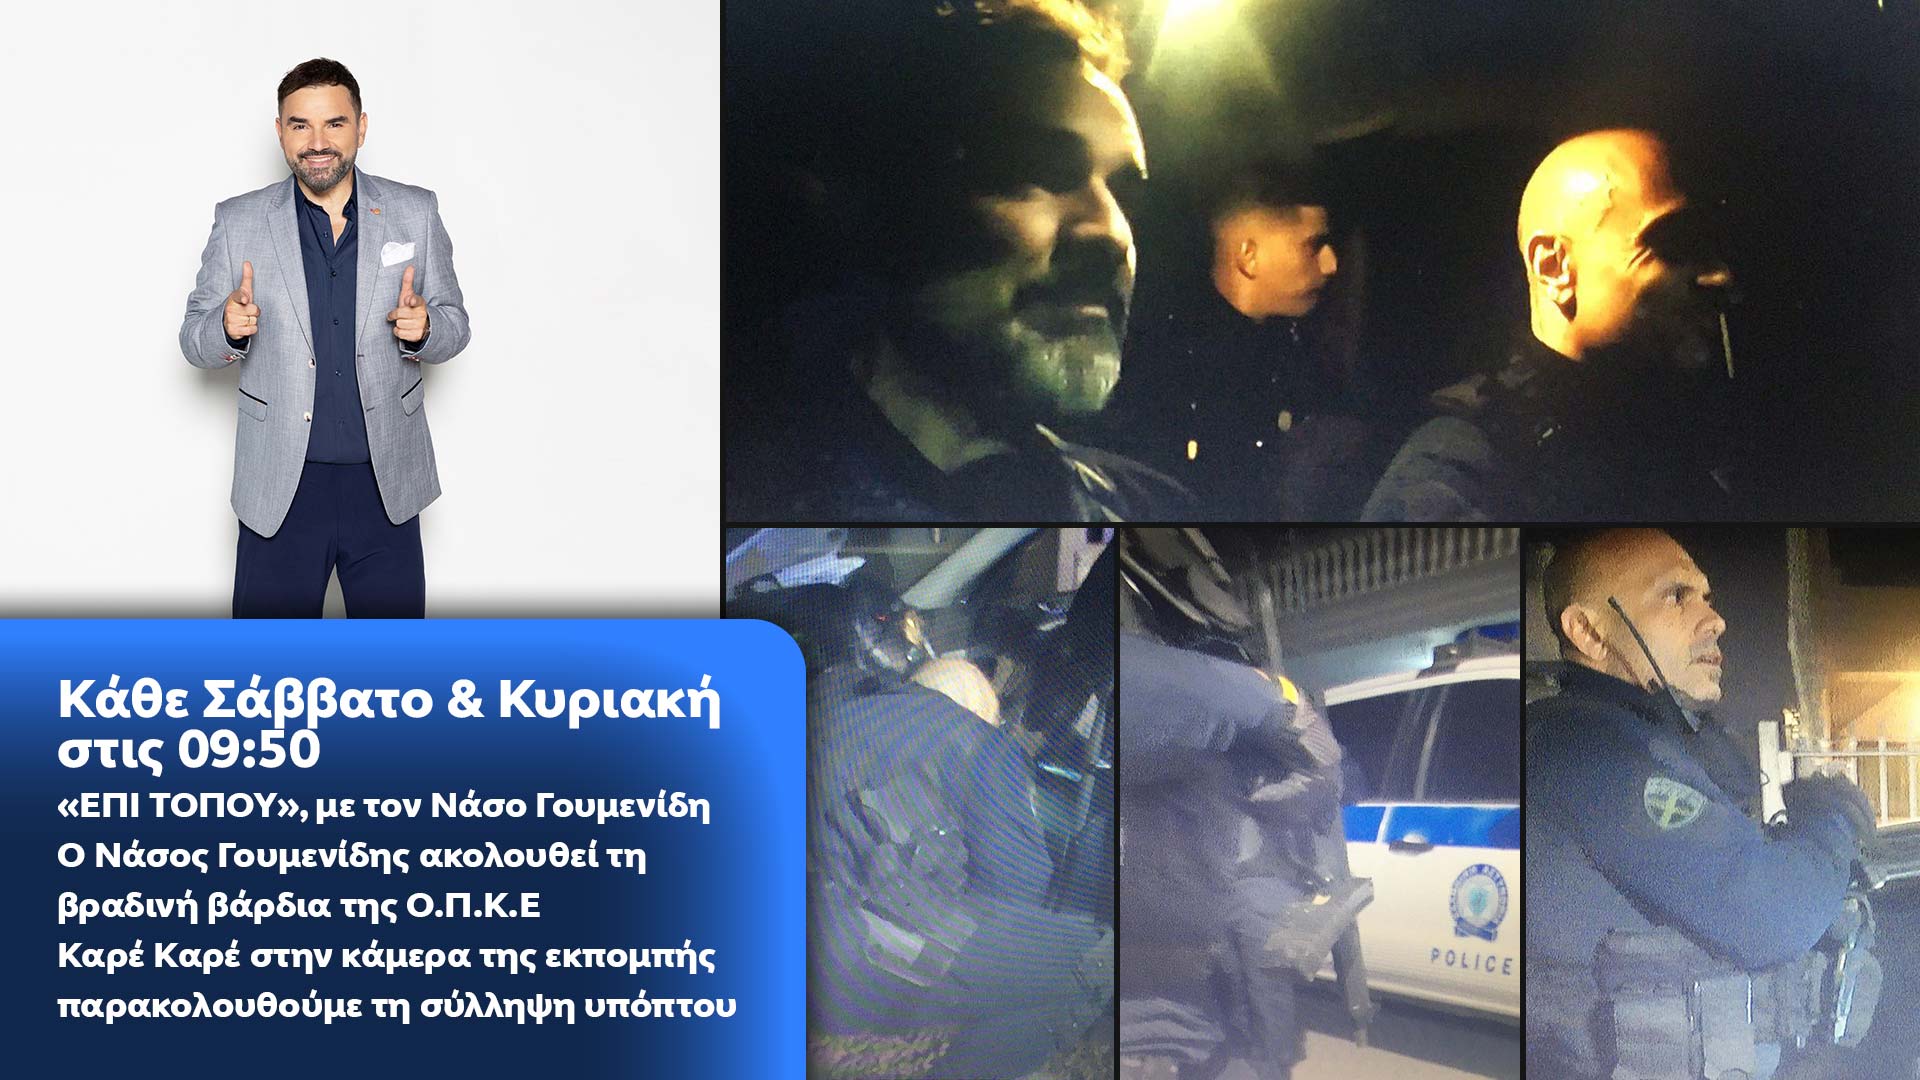 Δελτίο τύπου - ΕΠΙ ΤΟΠΟΥ - Ο Νάσος Γουμενίδης ακολουθεί τη βραδινή βάρδια της ΟΠΚΕκαρέ καρέ στην κάμερα της εκπομπής παρακολουθούμε τη σύλληψη υπόπτου